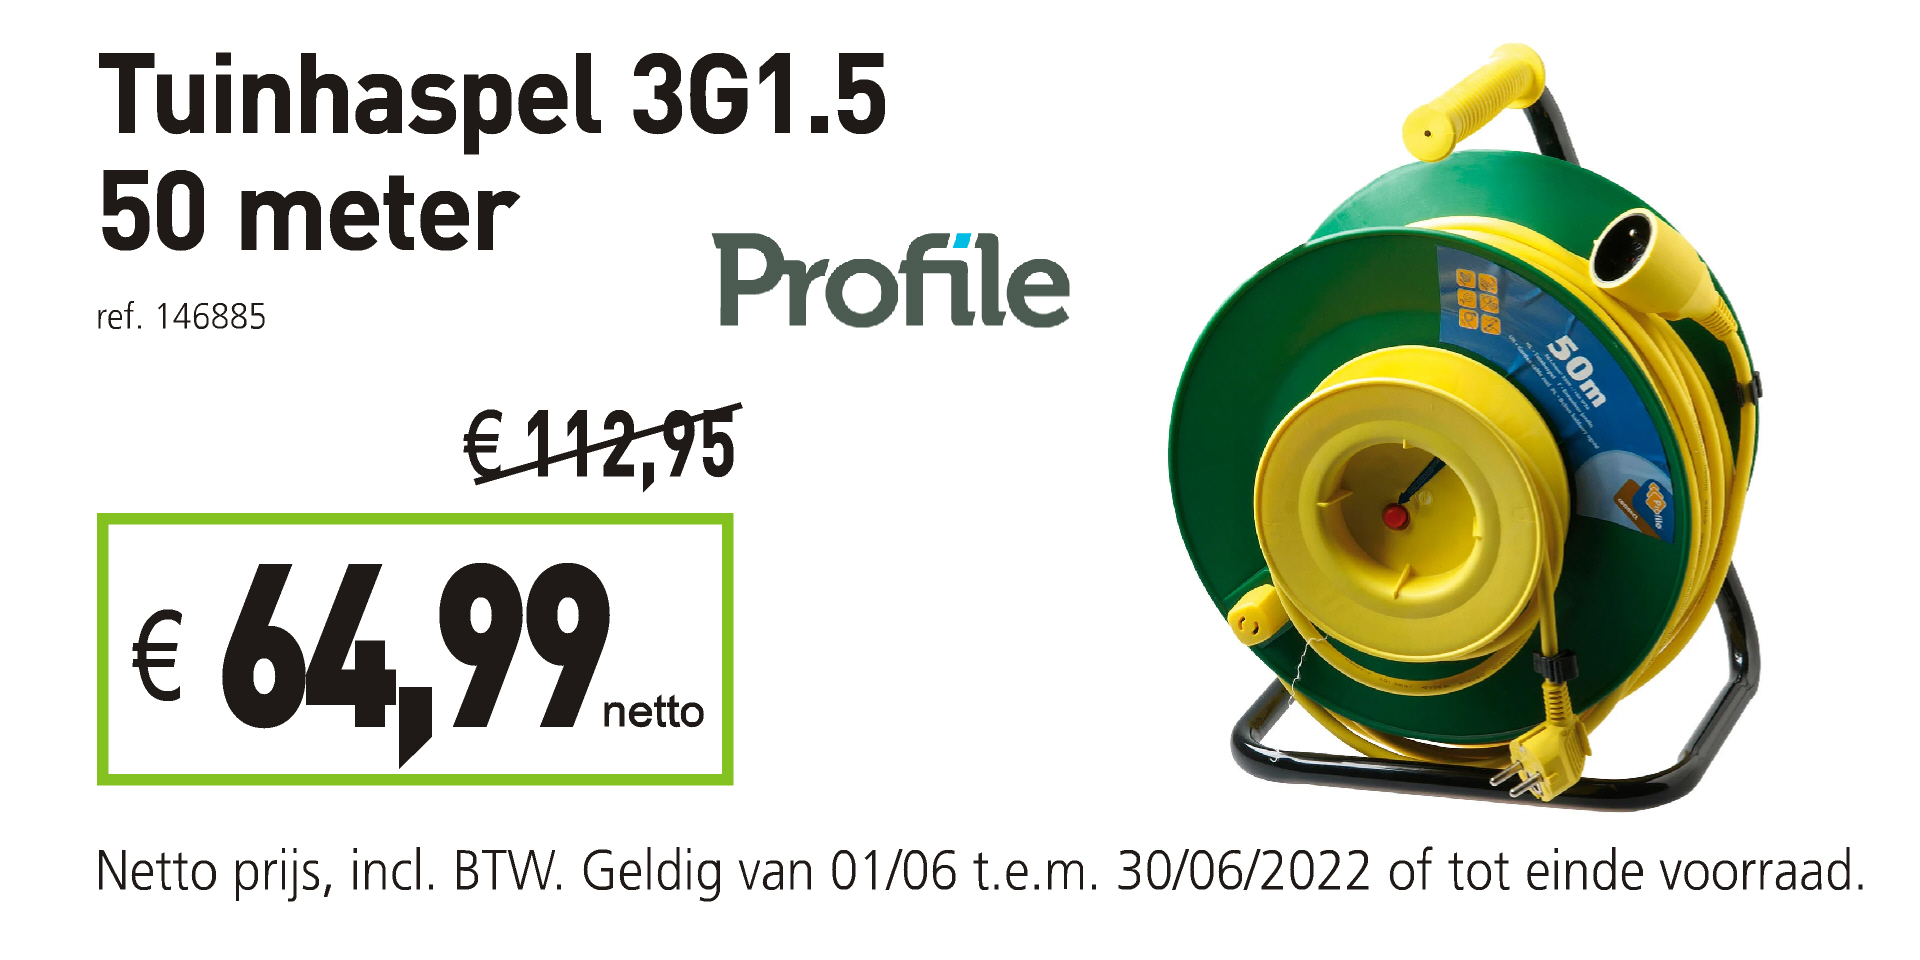 Profile tuinhaspel 3G1.5 50 m